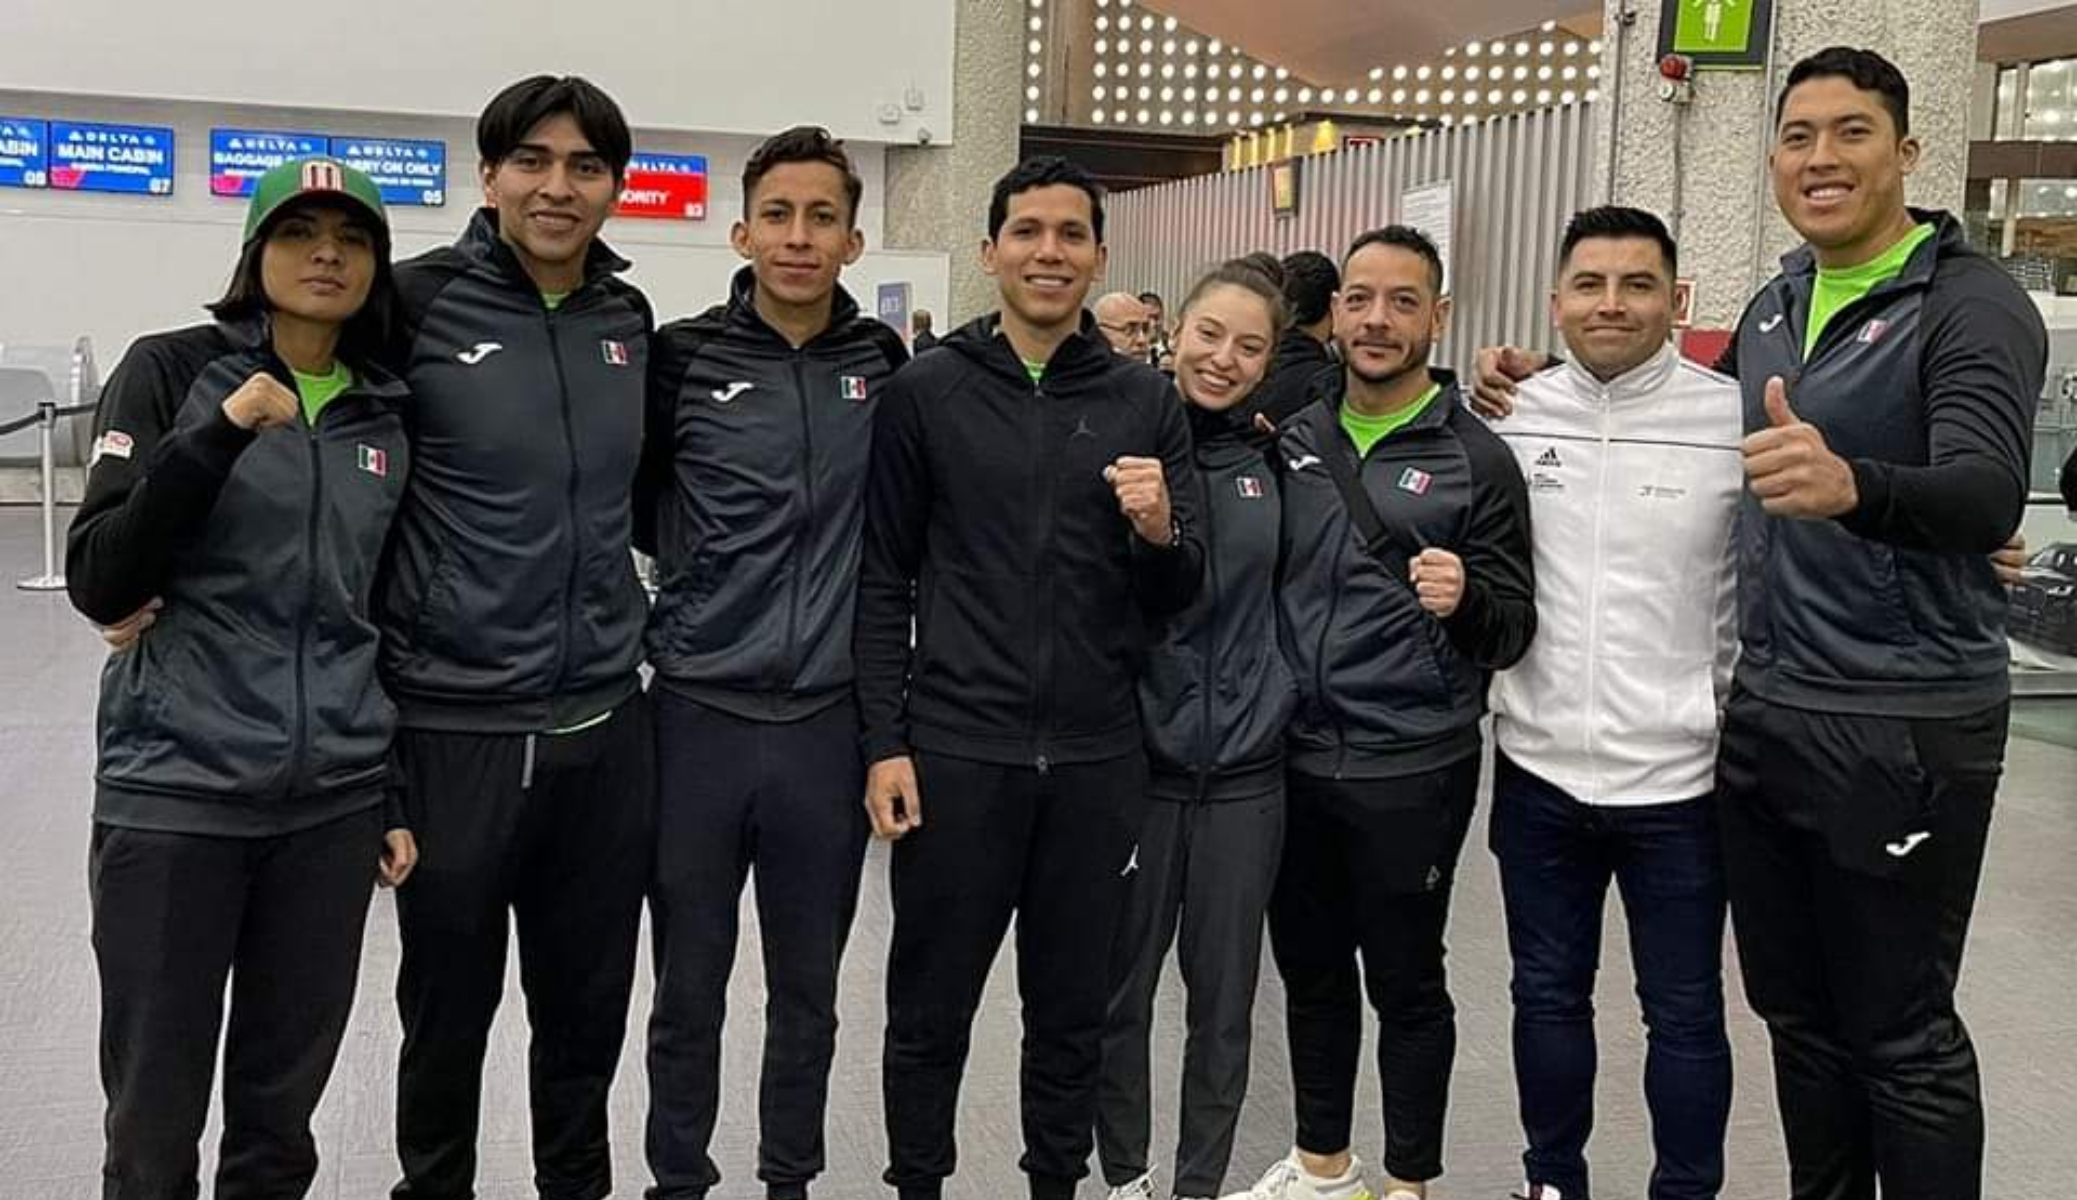 Selección mexicana de taekwondo rumbo a Arabia Saudita. CONADE
